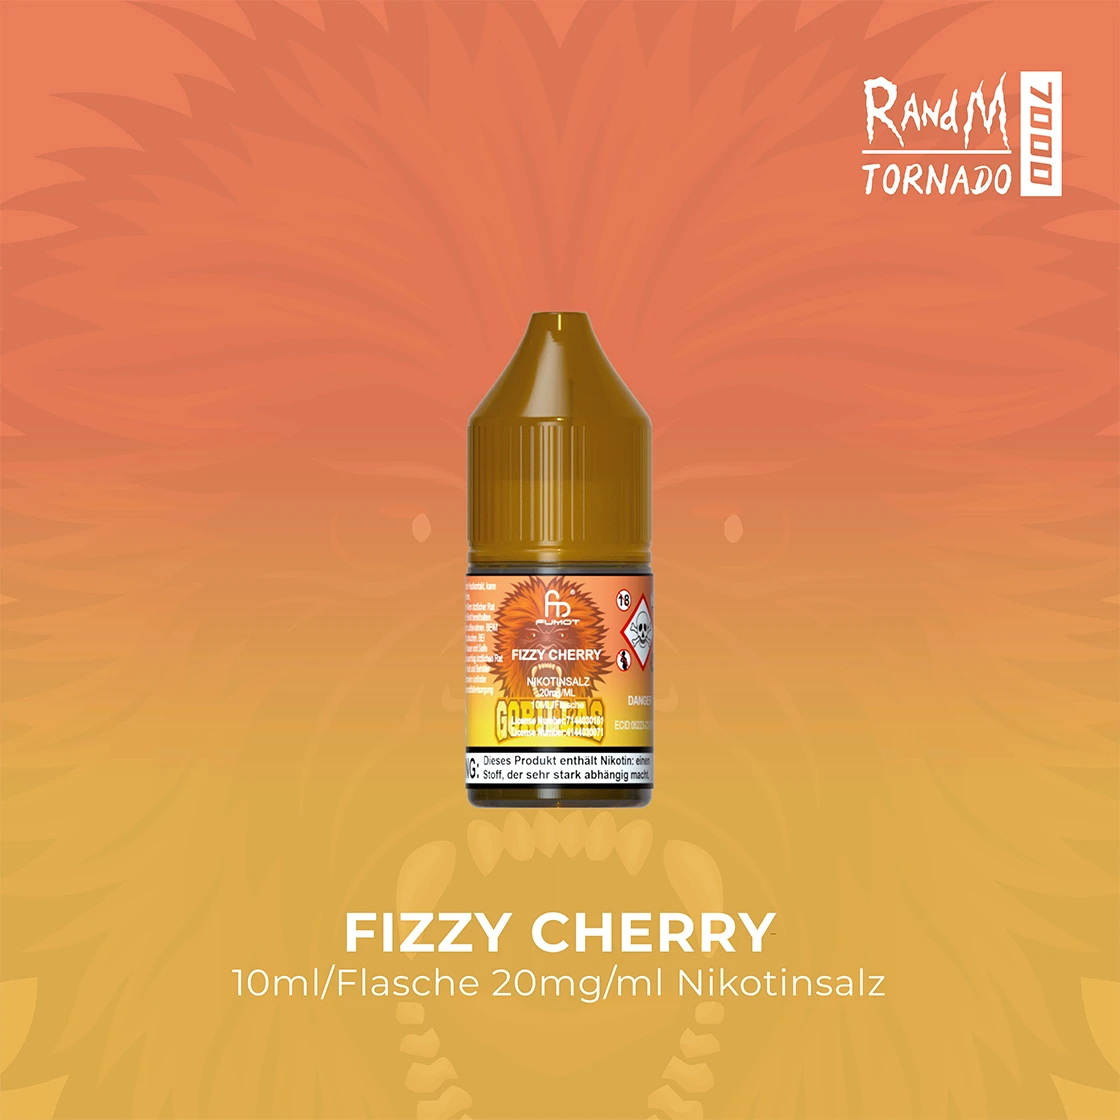 RandM Tornado 7000 Fizzy Cherry E-Liquid Nikotinsalz 20 mg | Vape Liquids 1